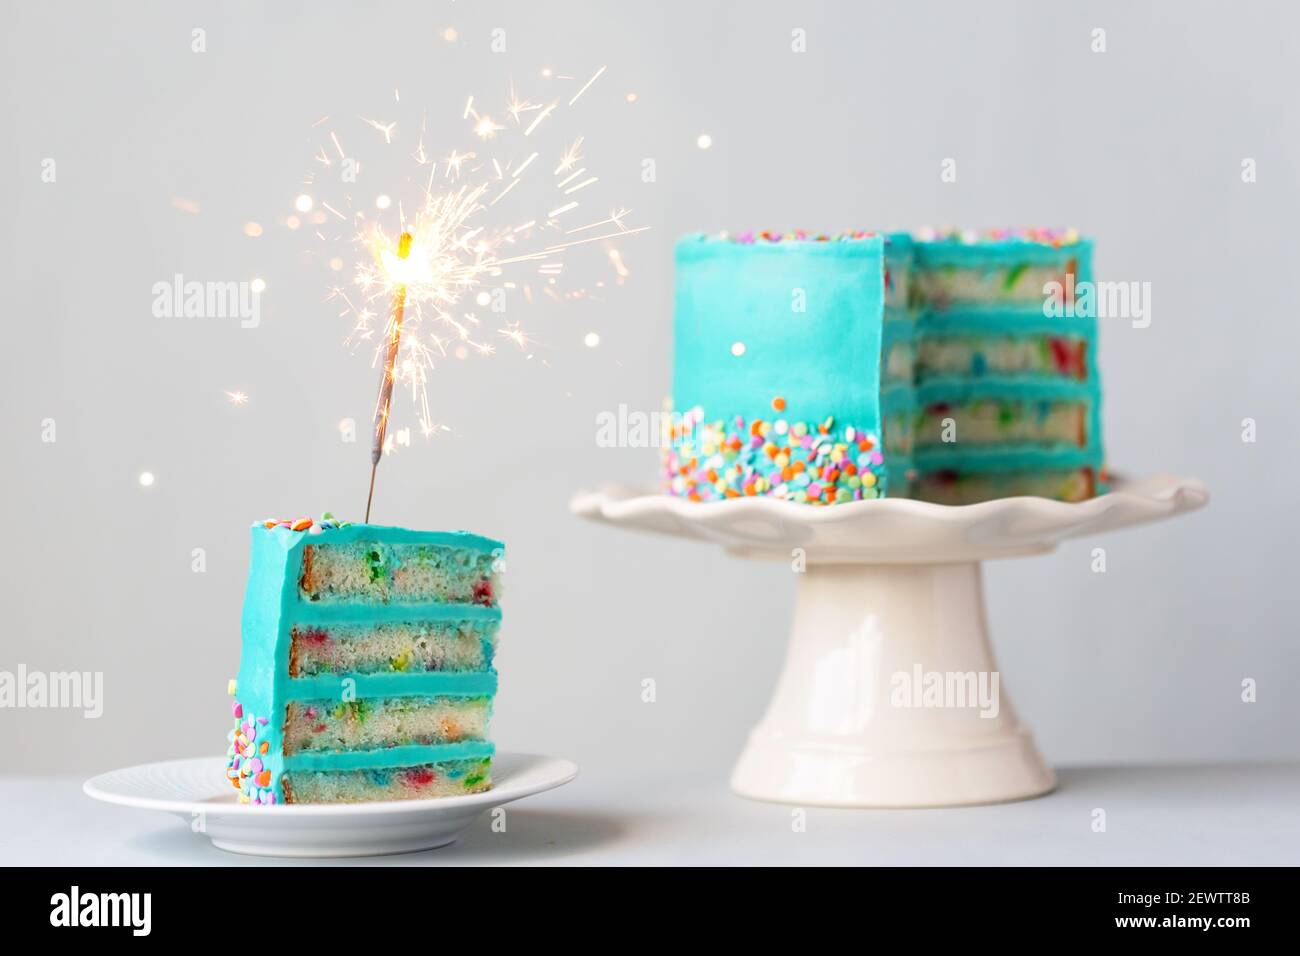 Fetta di torta di compleanno con glassa color turchese e un sparkler Foto Stock